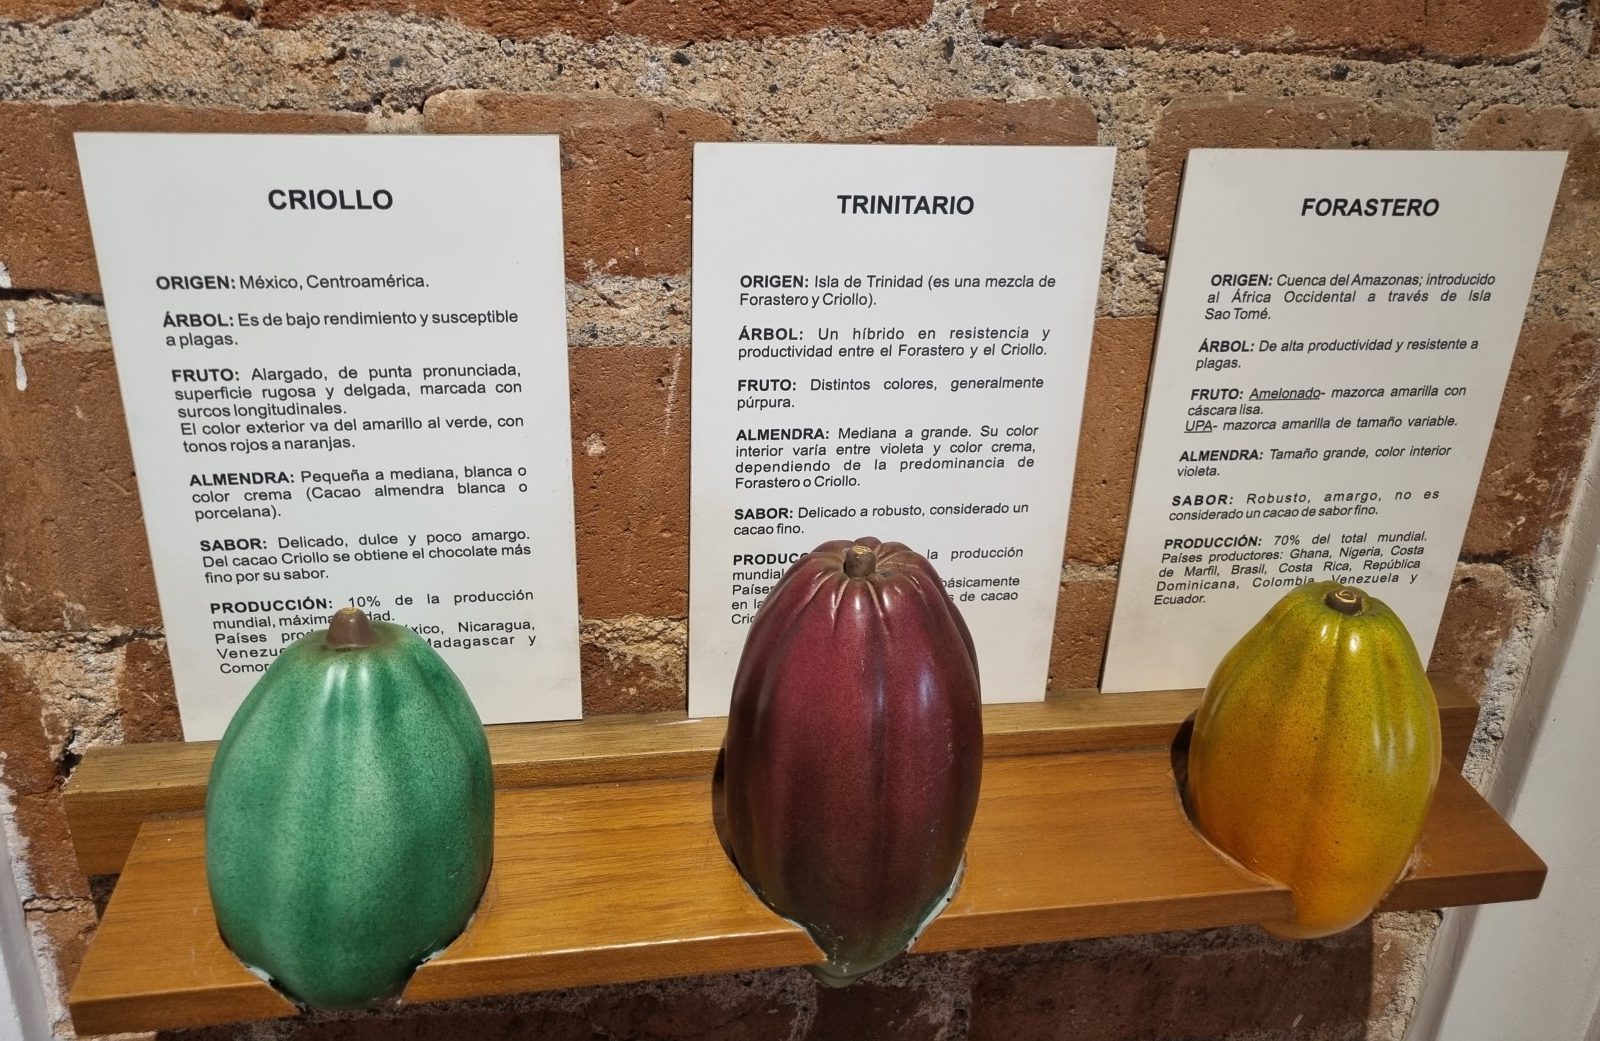 3 exemples de cabosses de cacaoyer avec les caractéristiques associées : Criollo, Trinitario, Forastero